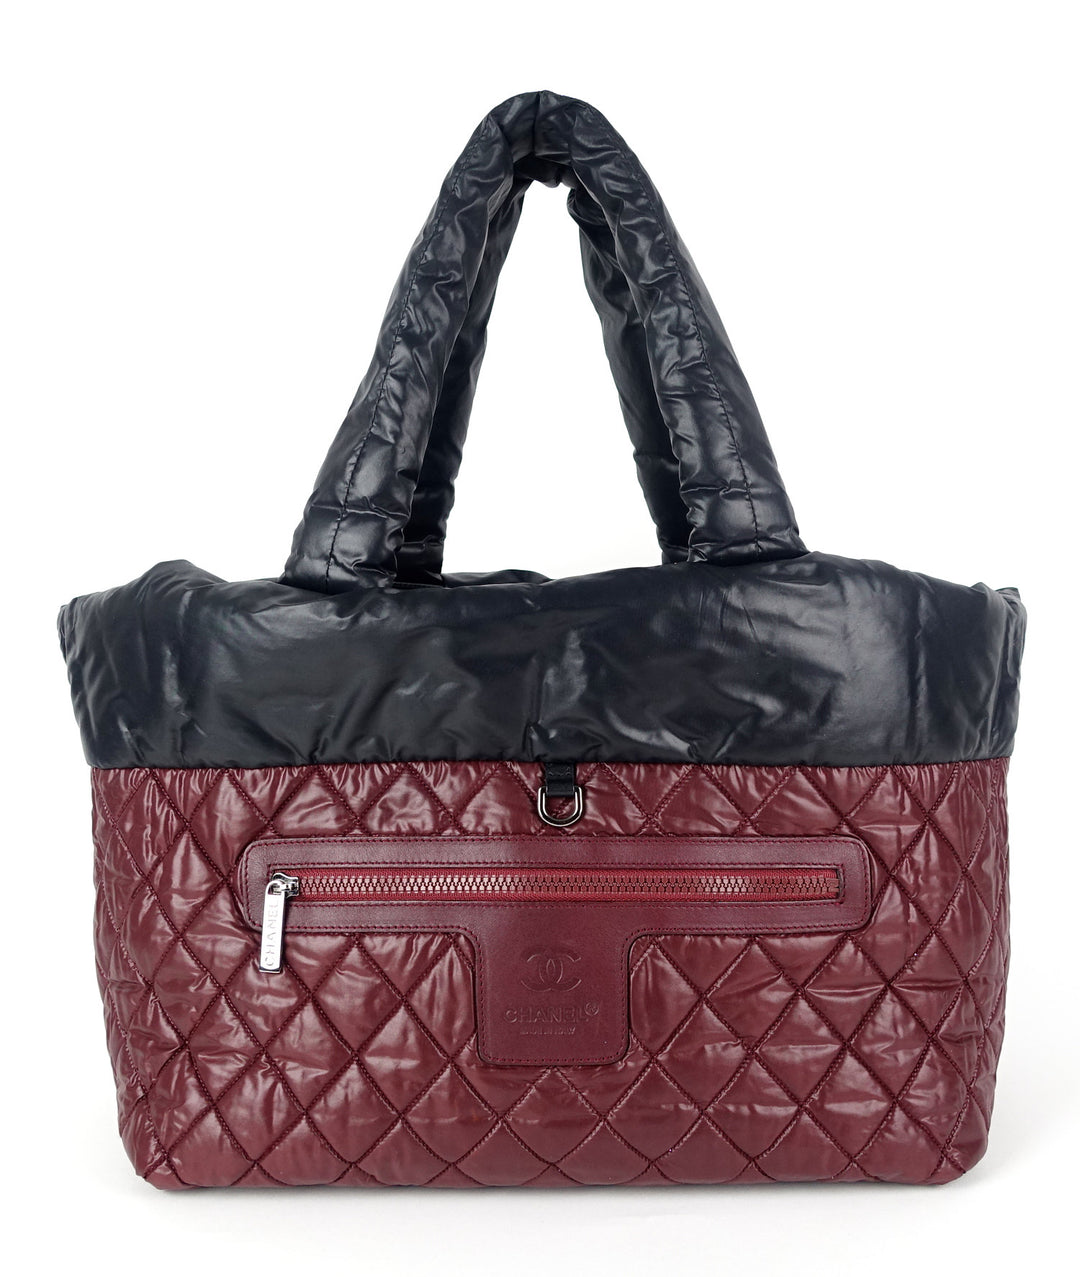 Chanel Coco Cocoon Handbags - PurseBlog